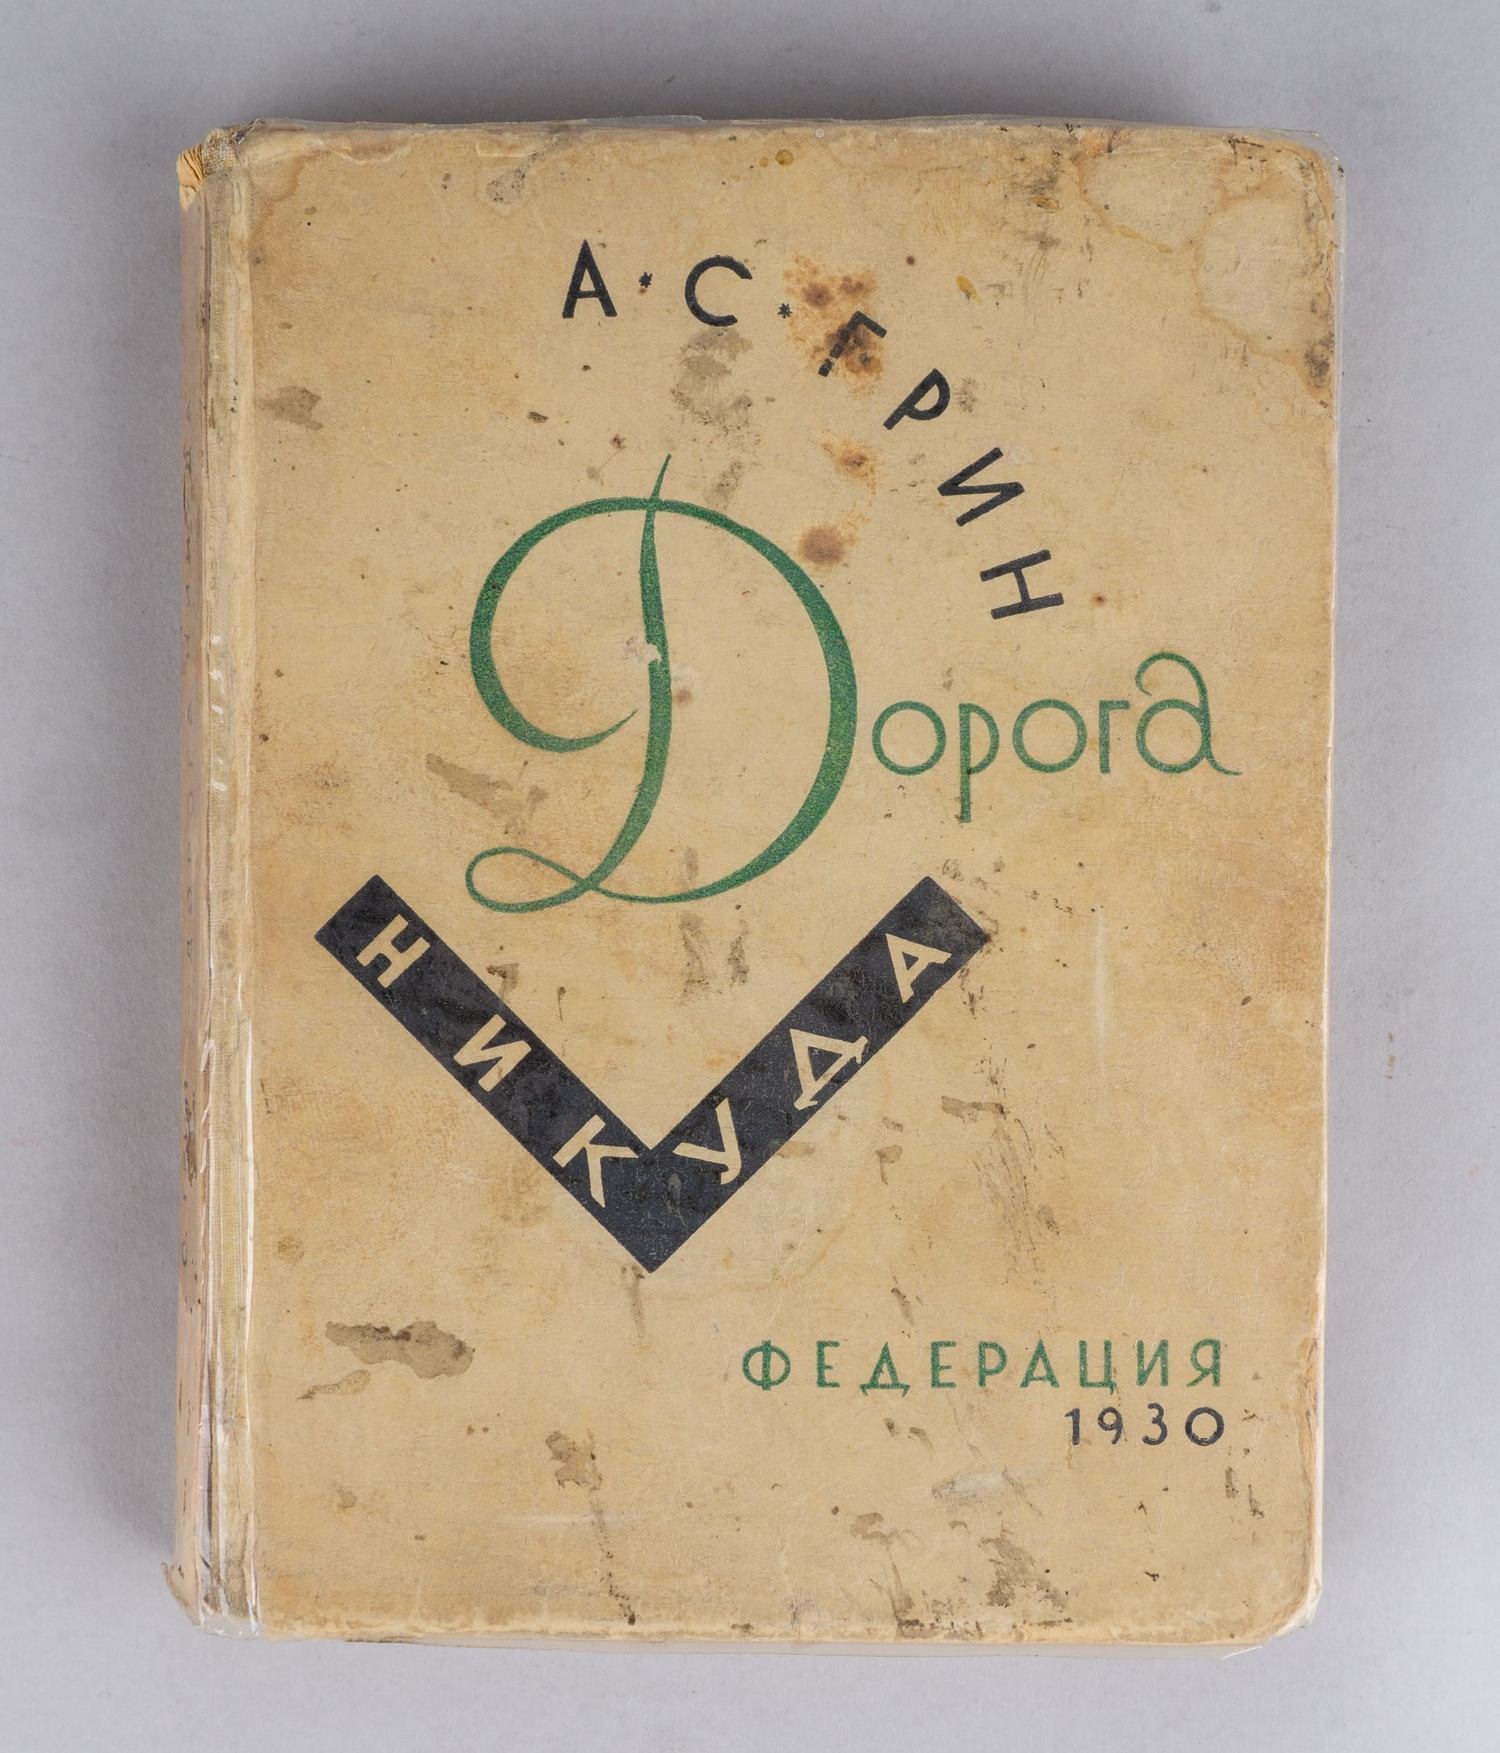 Грин А.С. Дорога никуда (М., 1930). Первое издание.